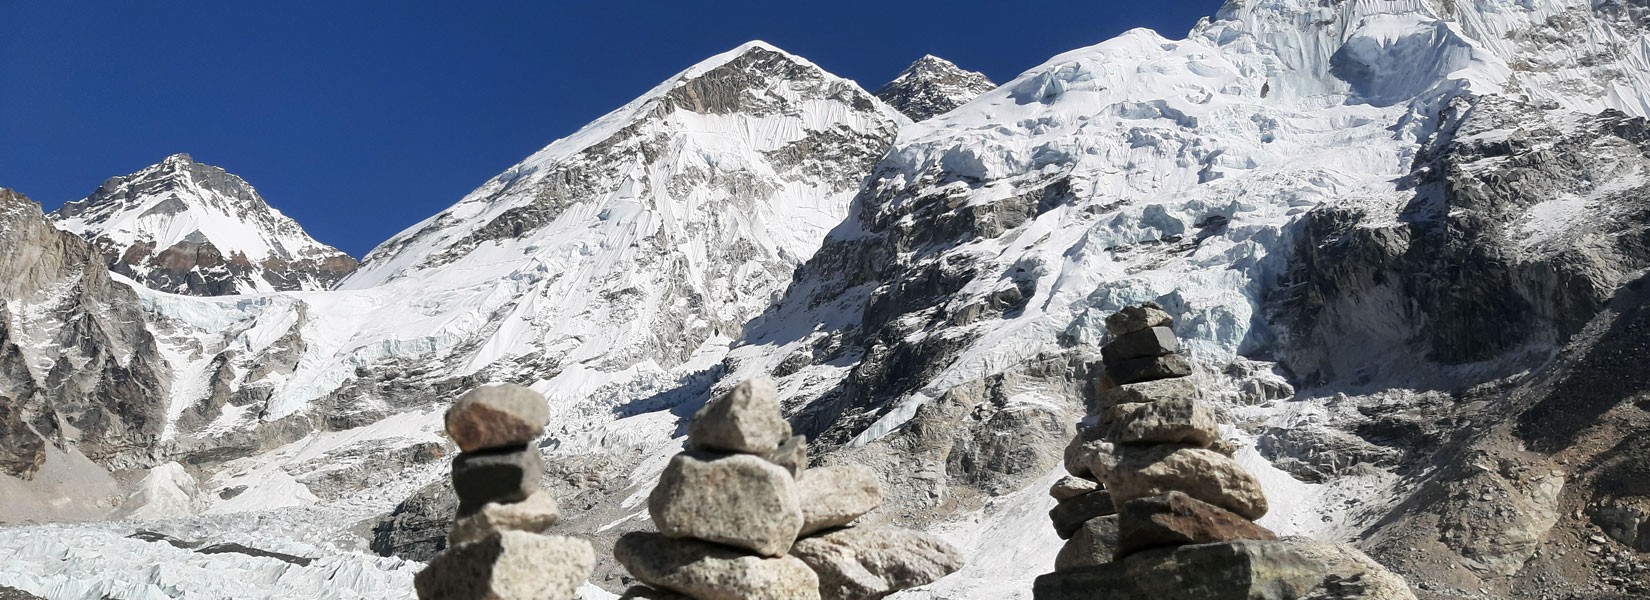 Everest Base Camp Trek Complete Guide